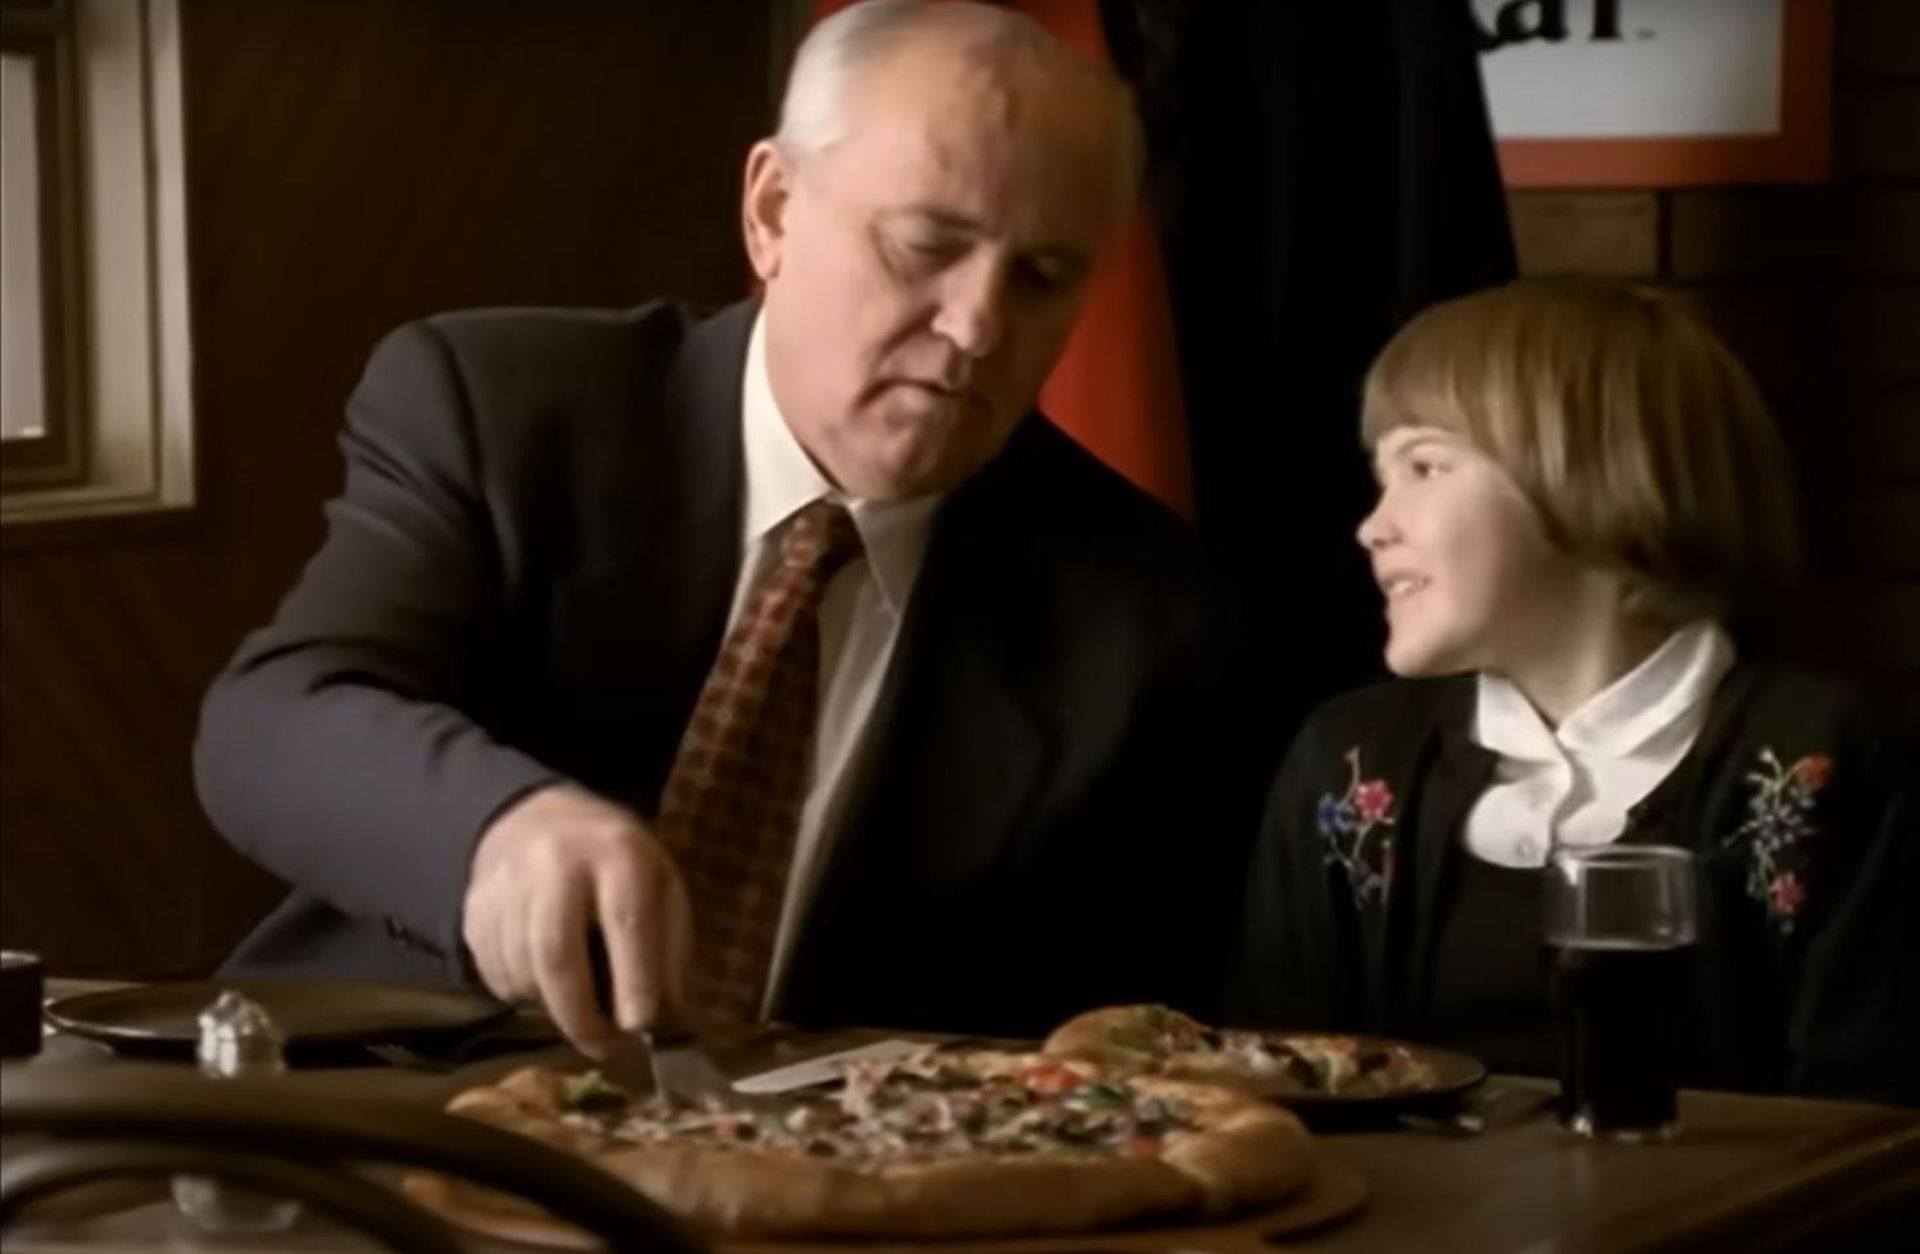 Scène de la version internationale de la publicité Pizza Hut dans laquelle Mikhaïl Gorbatchev a joué.